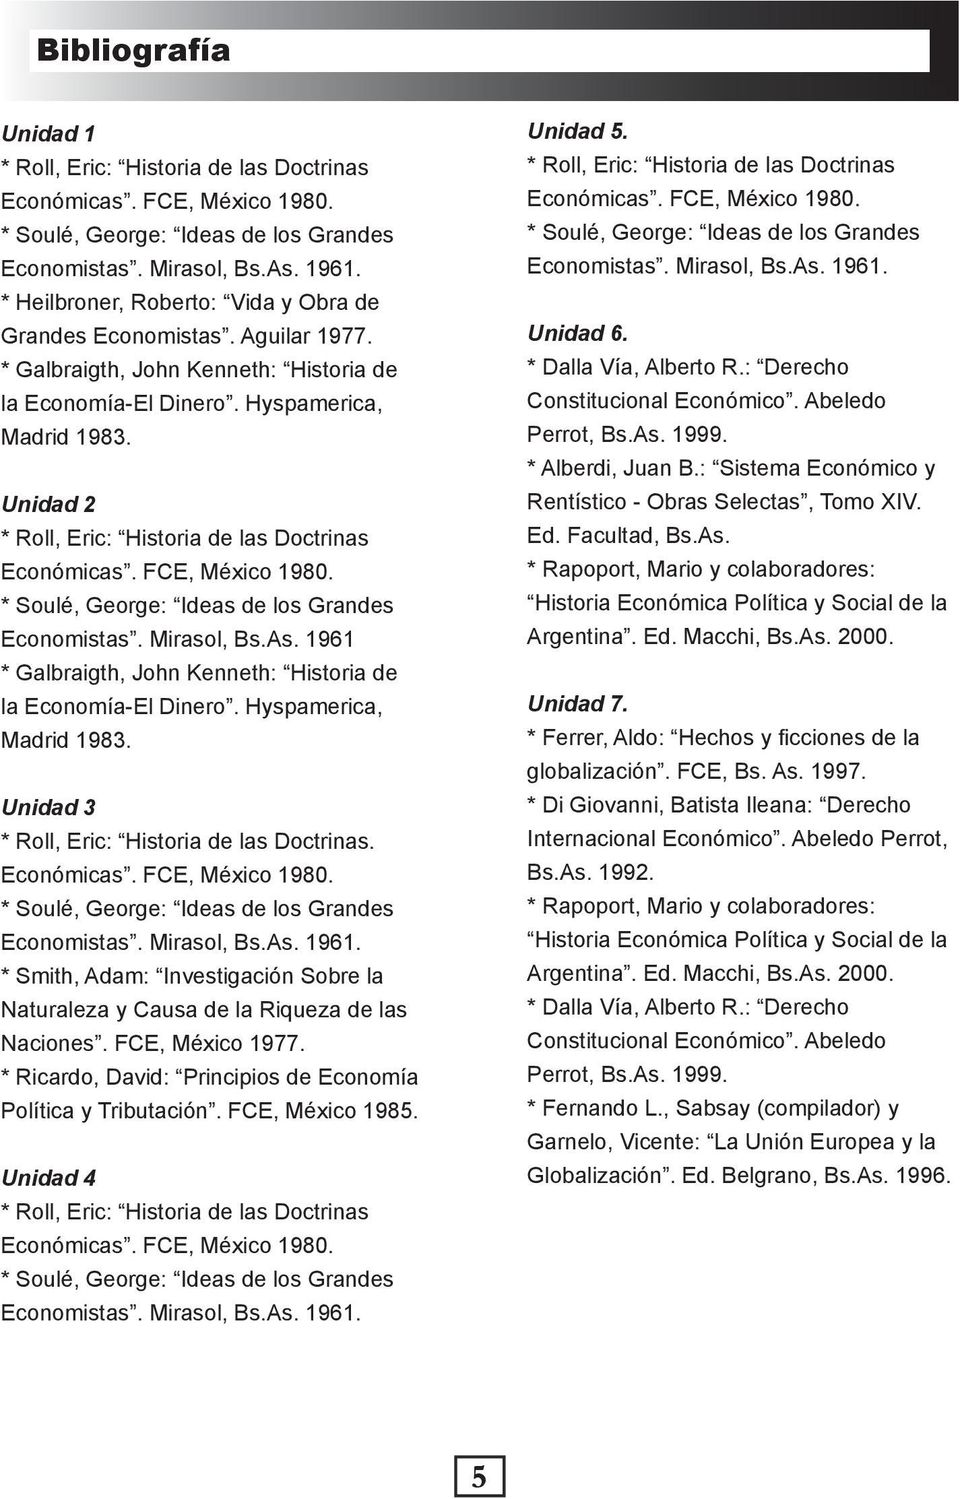 1961 * Galbraigth, John Kenneth: Historia de la Economía-El Dinero. Hyspamerica, Madrid 1983. Unidad 3 * Roll, Eric: Historia de las Doctrinas. Economistas. Mirasol, Bs.As. 1961.